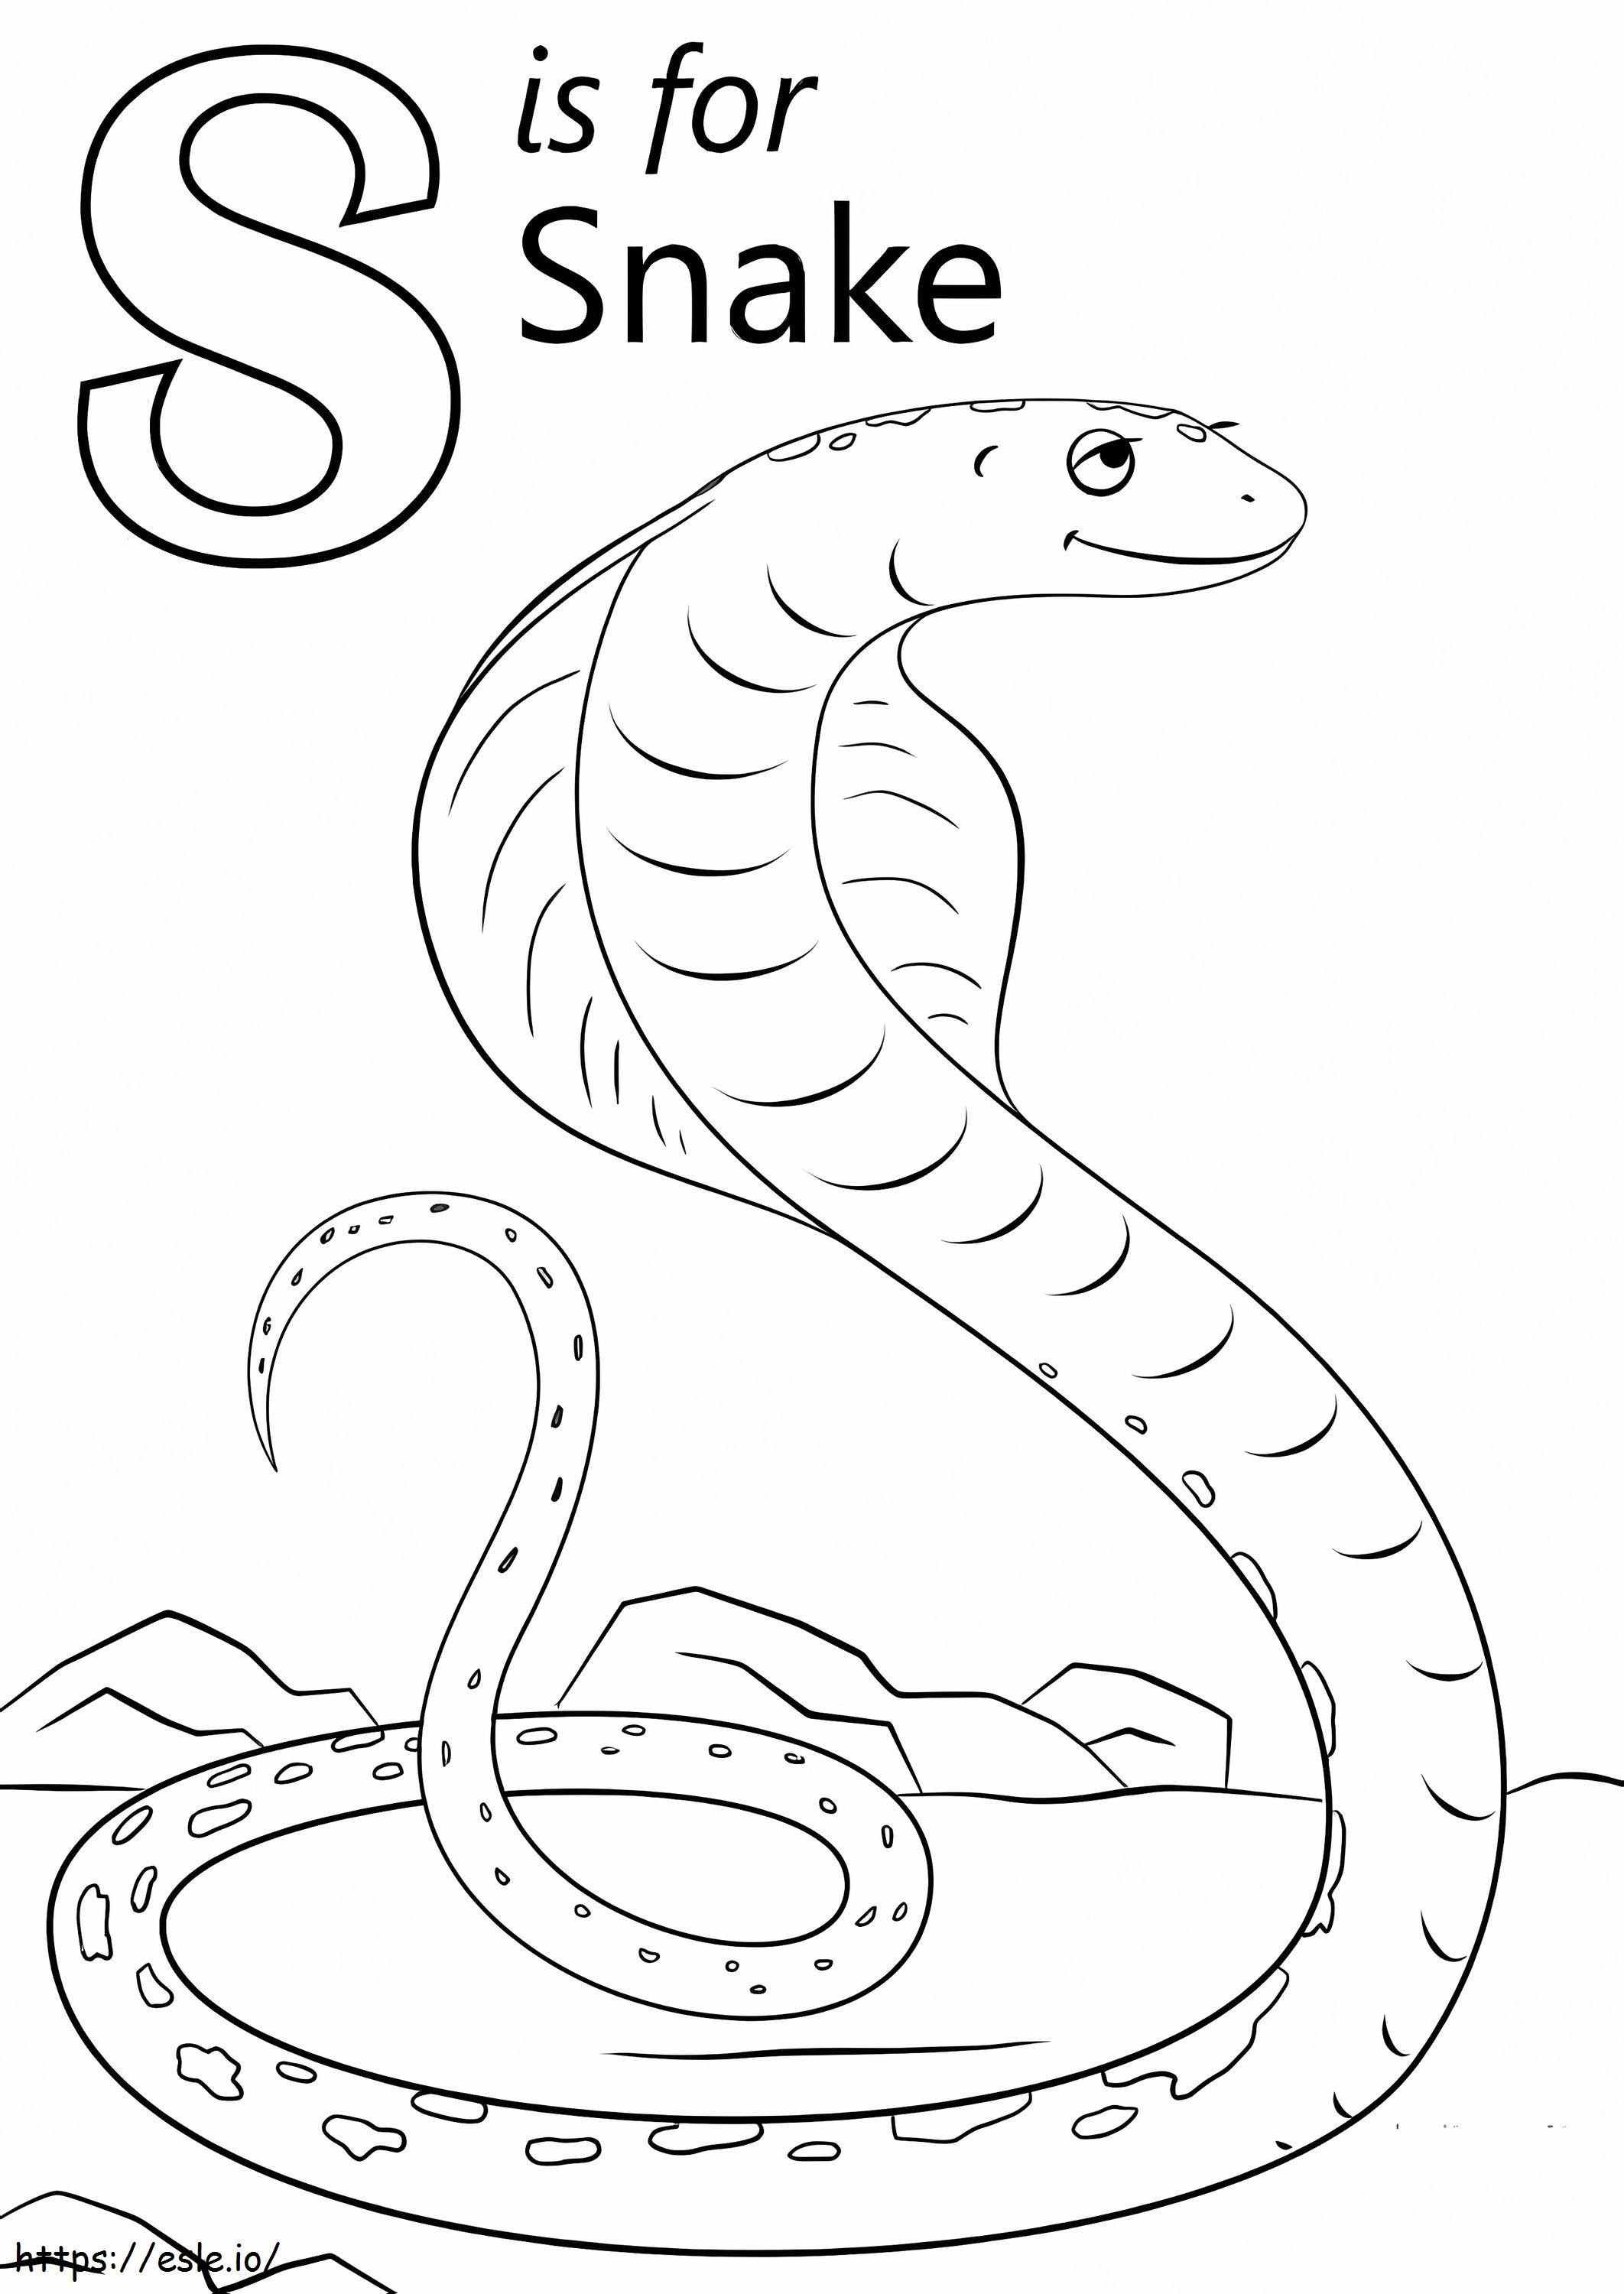 Schlangenbuchstabe S ausmalbilder